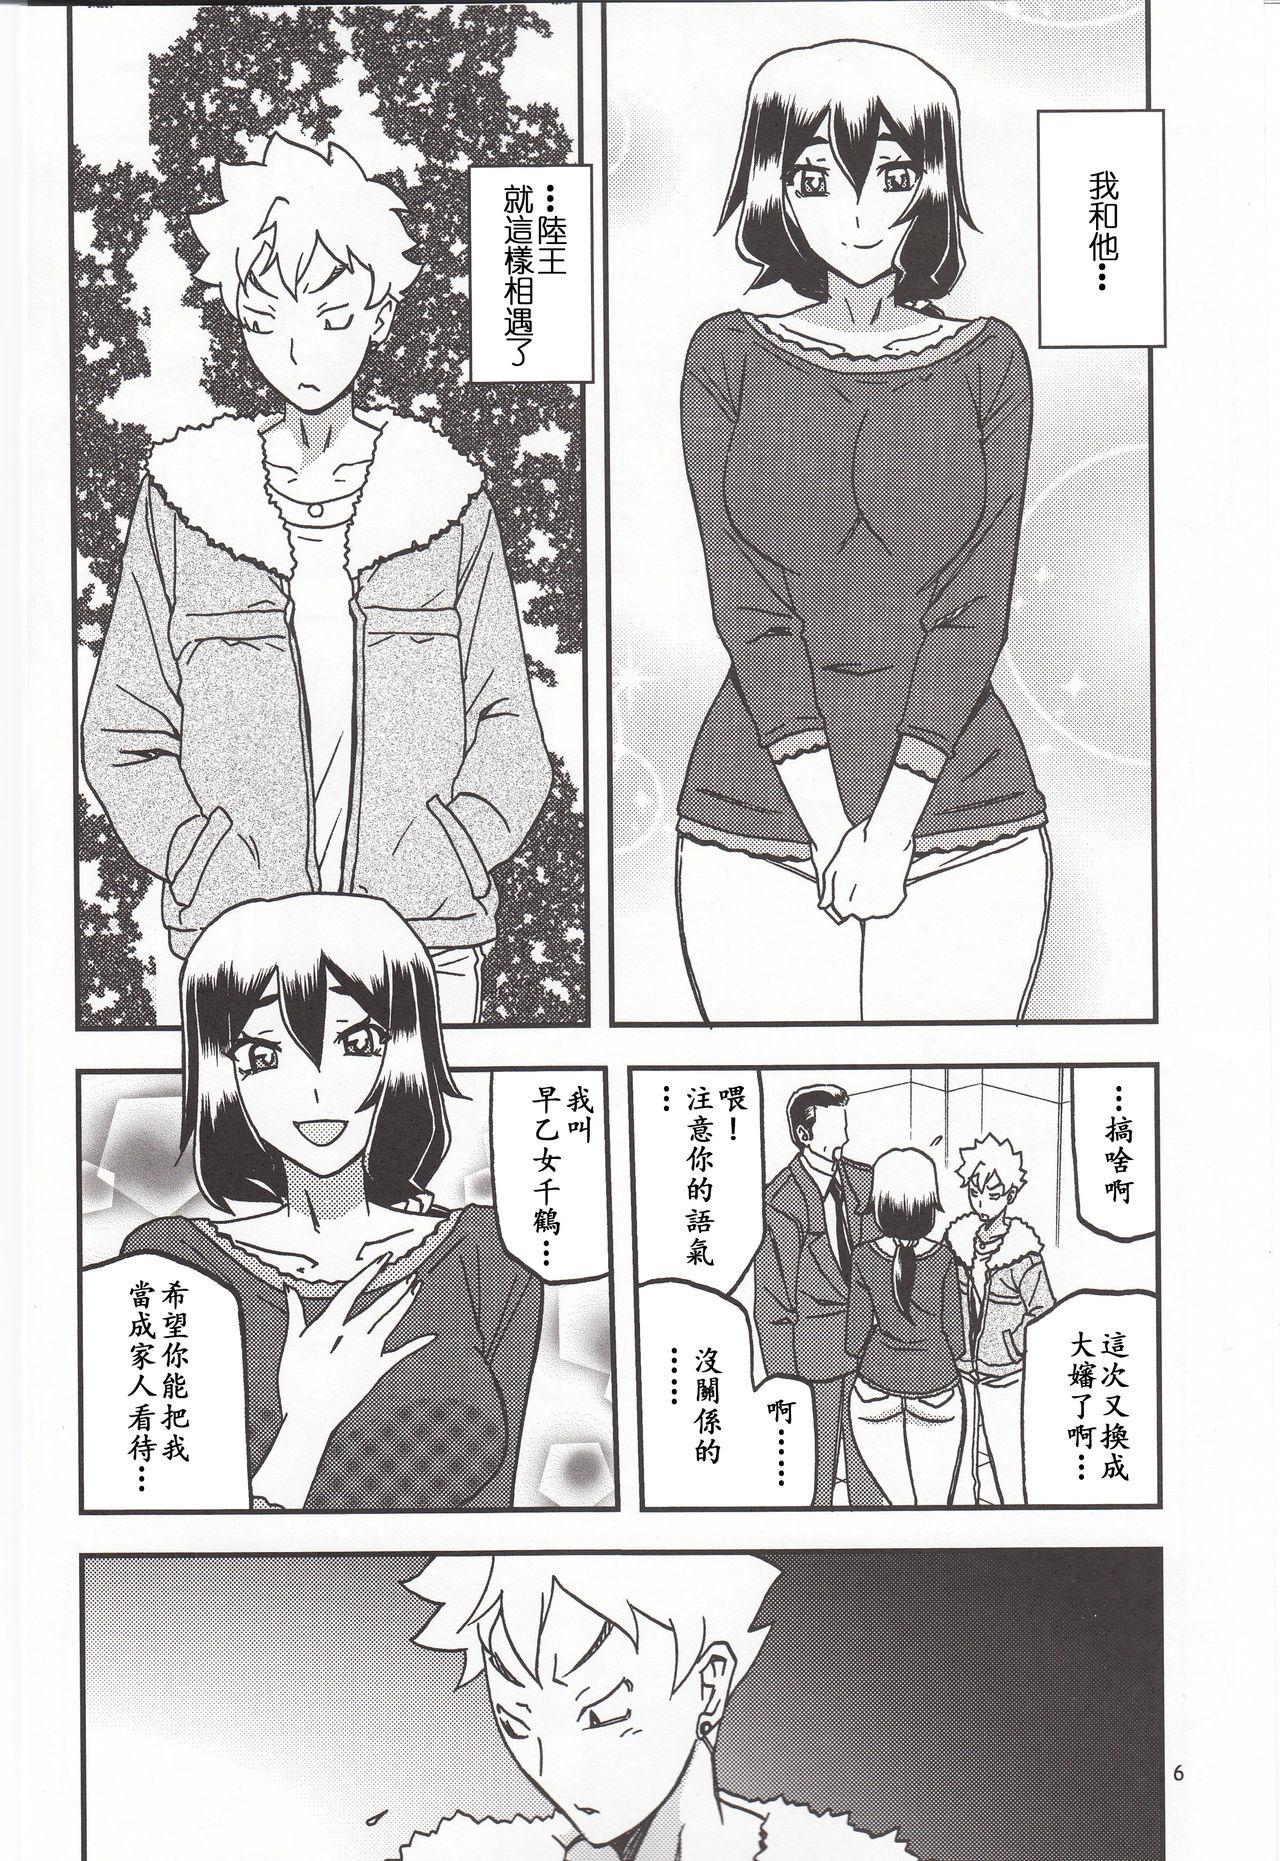 Transex Akebi no Mi - Chizuru Katei - Akebi no mi 8teen - Page 5